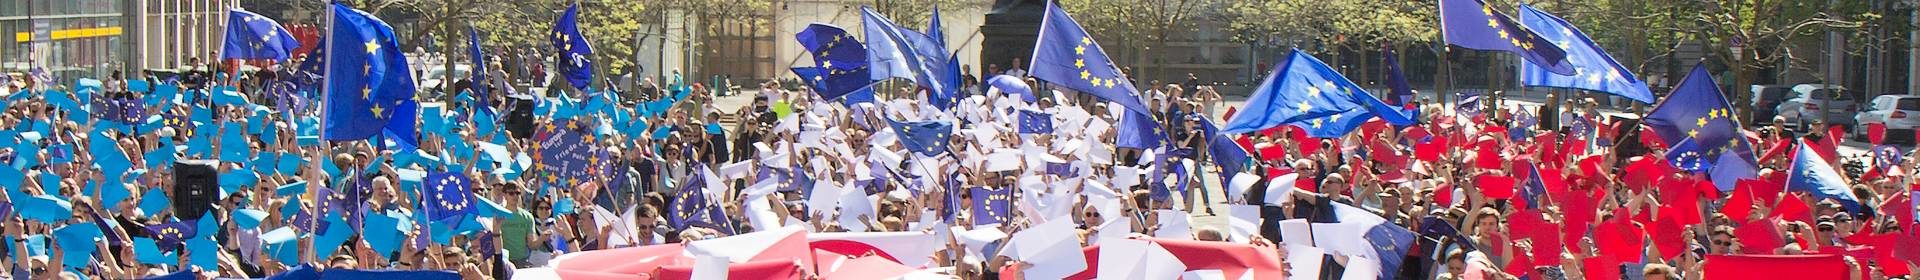 EU citizens parade